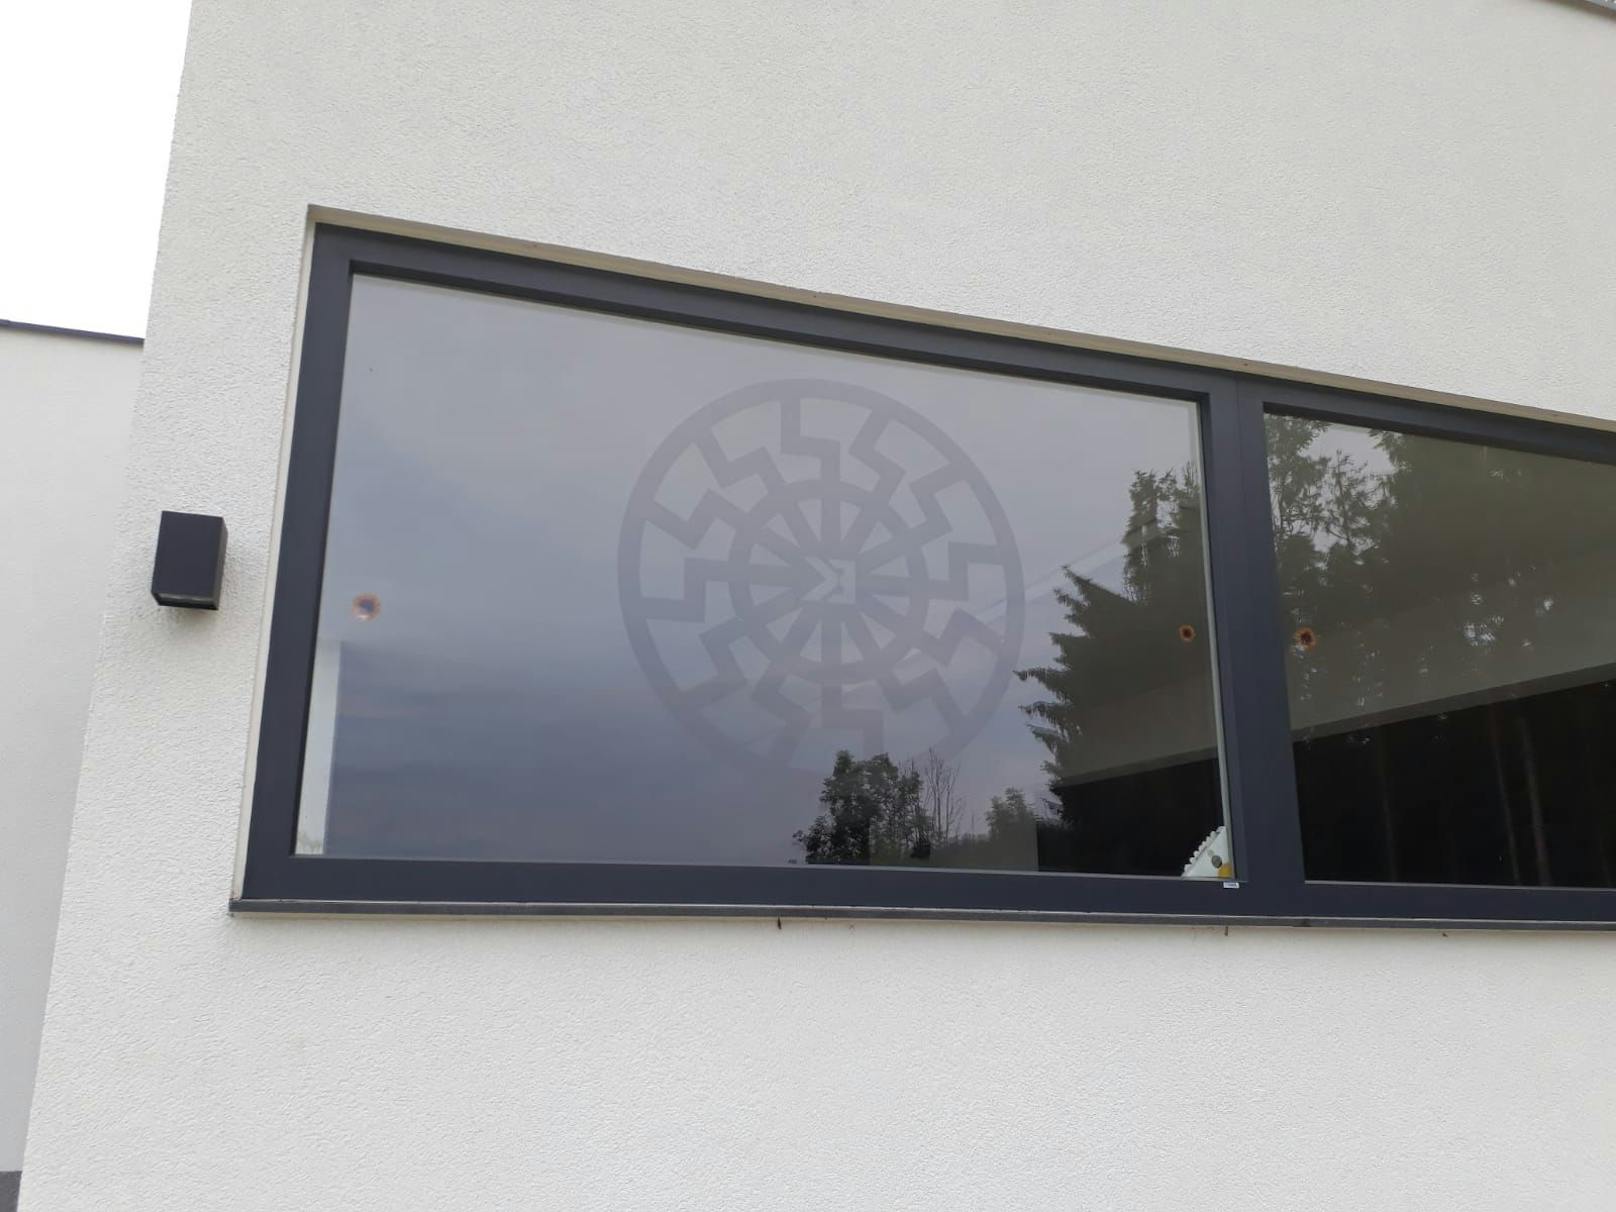 Anzeige wegen Nazi-Symbol auf Fenster in OÖ